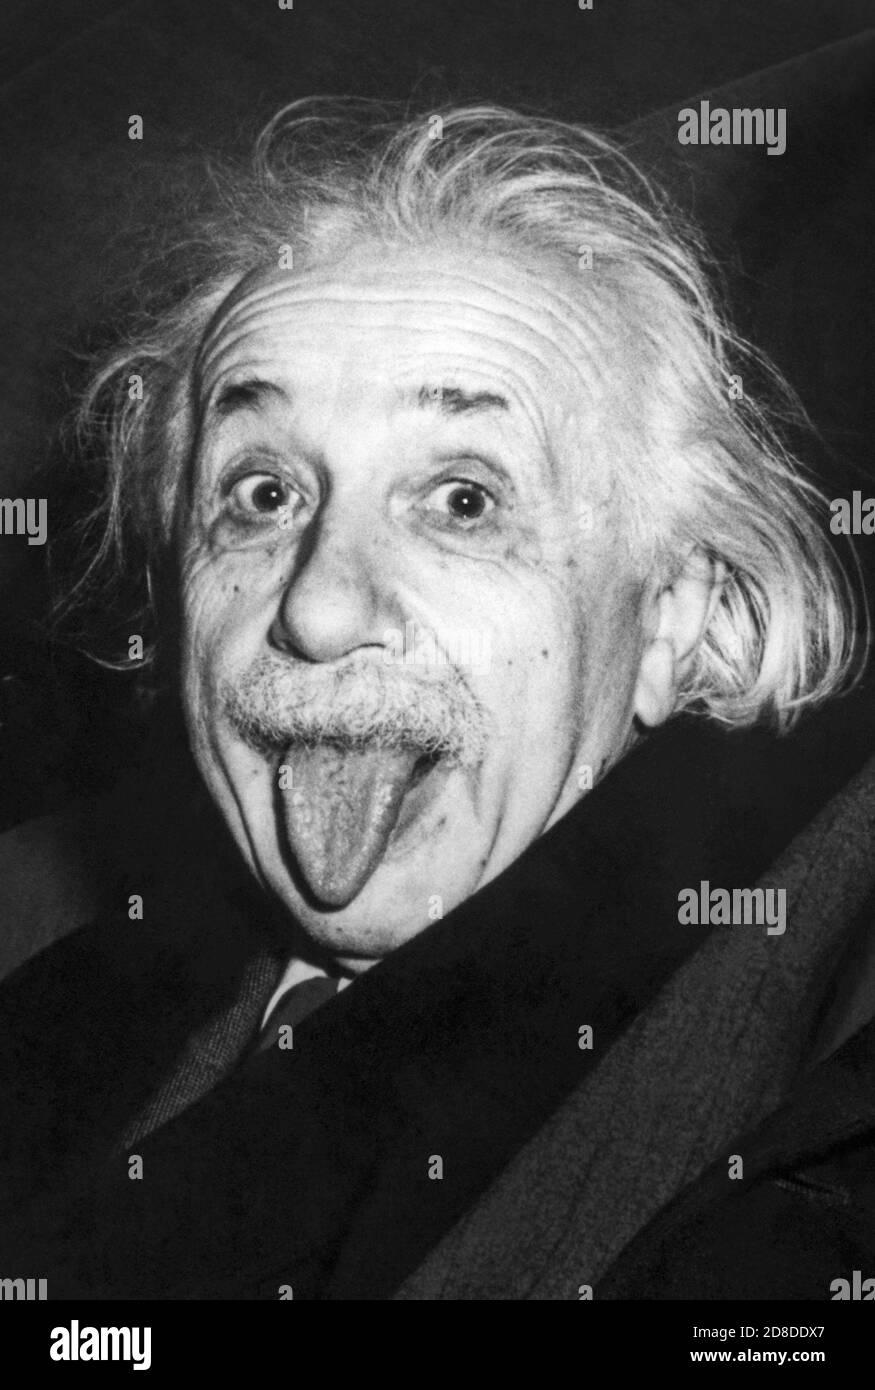 Photo iconique d'Albert Einstein en tirant sa langue à l'occasion de son 72e anniversaire de fête à l'Université de Princeton le 14 mars 1951. (Photo d'Arthur Sasse) Banque D'Images